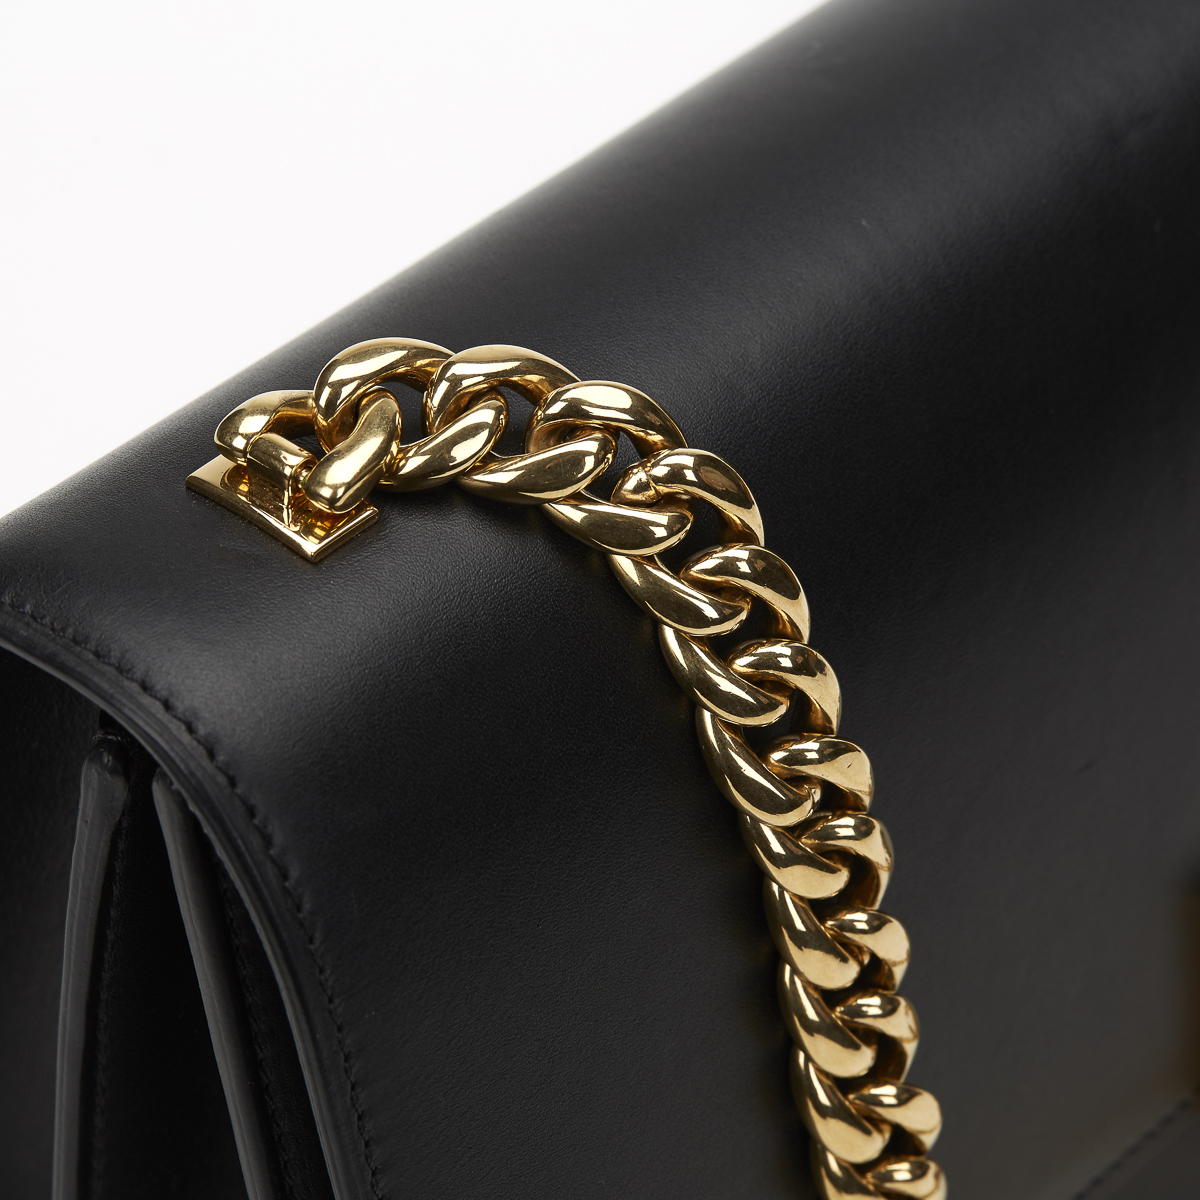 CELINE Case Flap Bag , - Black Smooth Leather Case Flap Bag   TYPE Shoulder SERIAL NUMBER F-CE- - Image 12 of 12